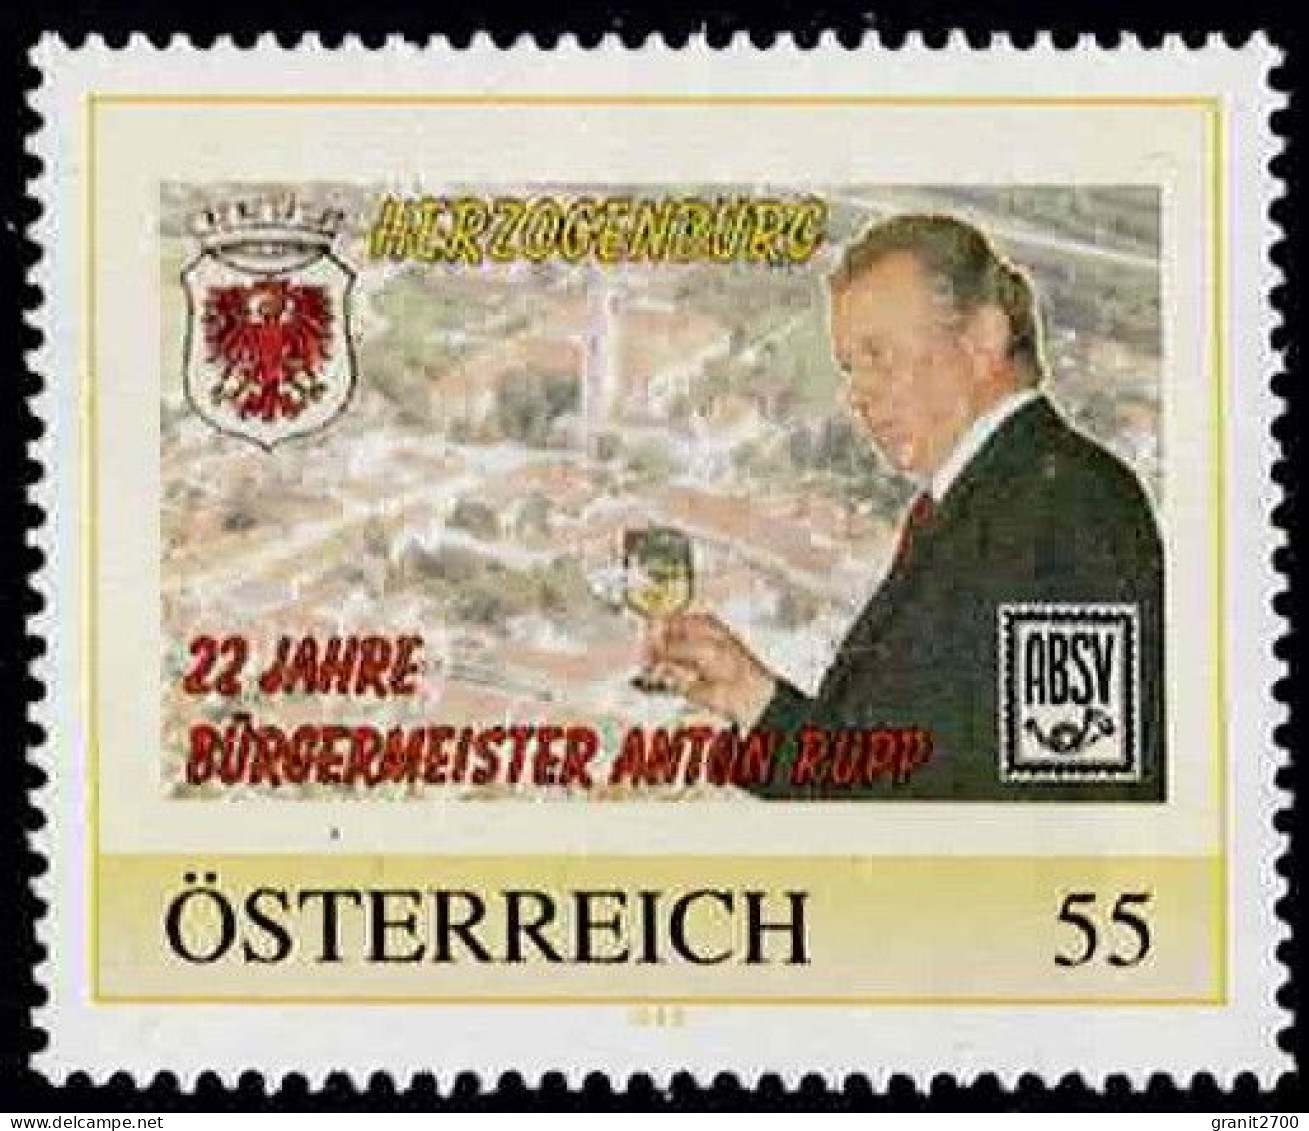 PM  Herzogenburg - 22 Jahre Bürgermeister Ex Bogen Nr. 8015225  Postfrisch - Personnalized Stamps